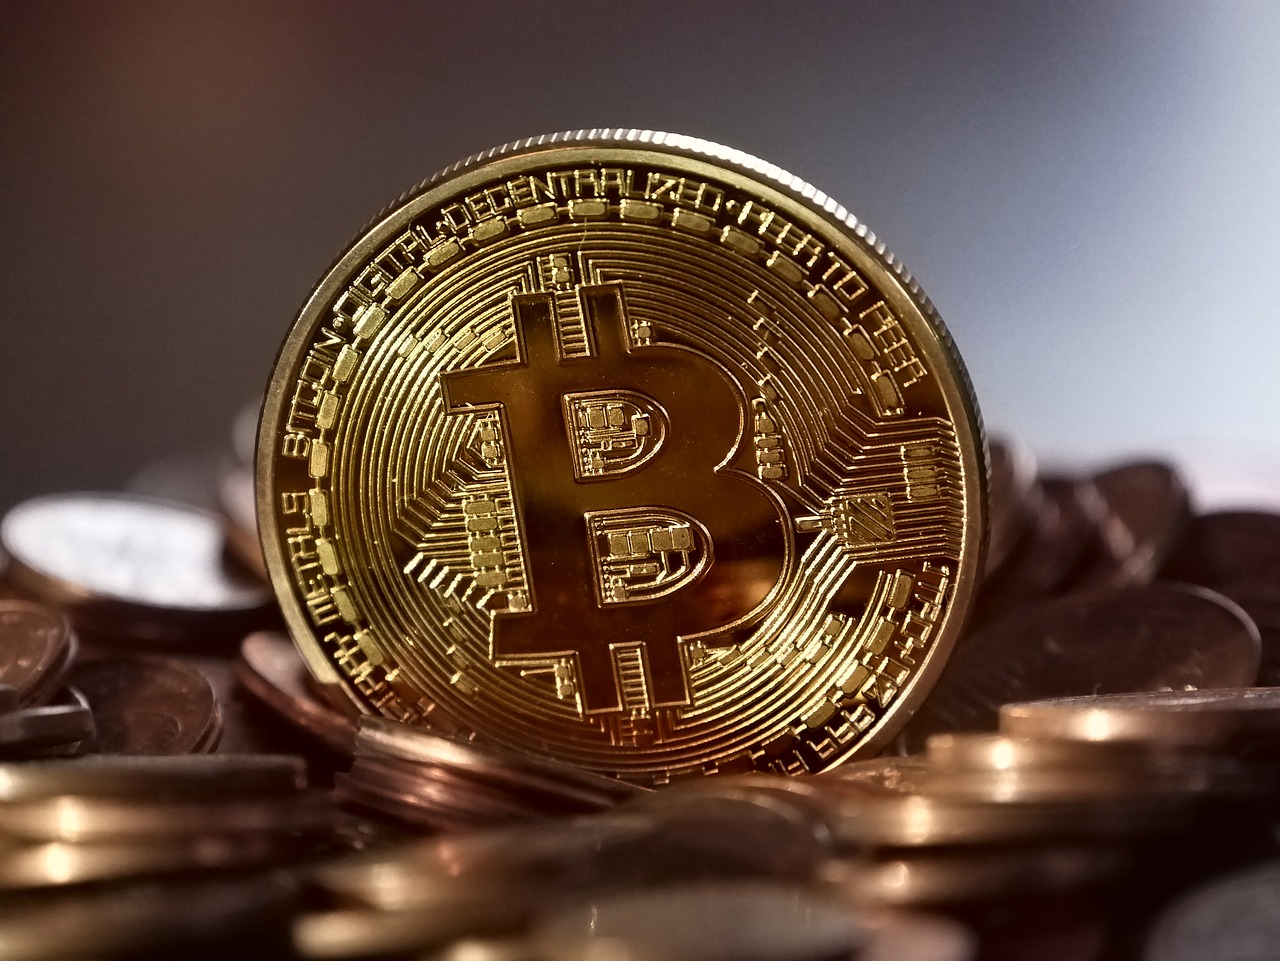 Bitcoin has surged 1500% this year.